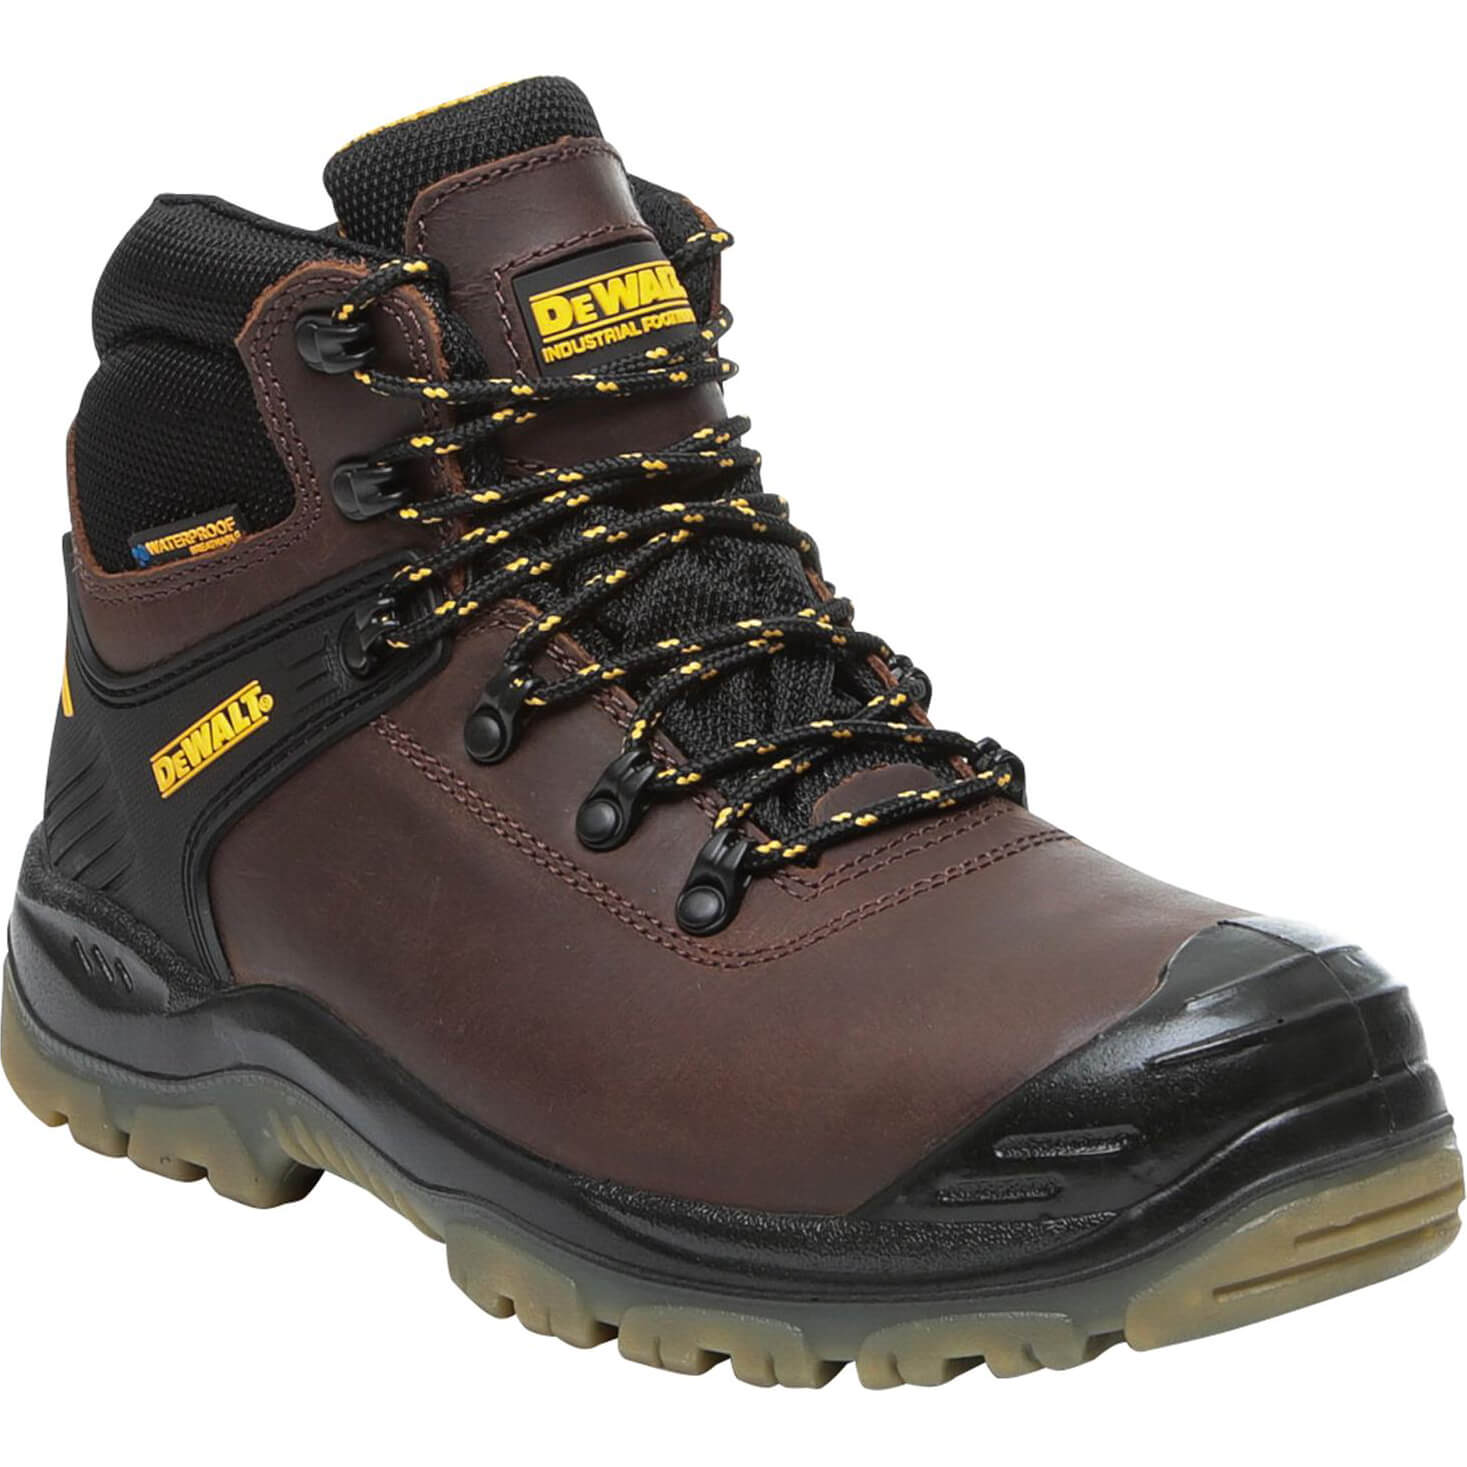 DeWalt Newark Waterproof Safety Hiker Boots Brown Size 12